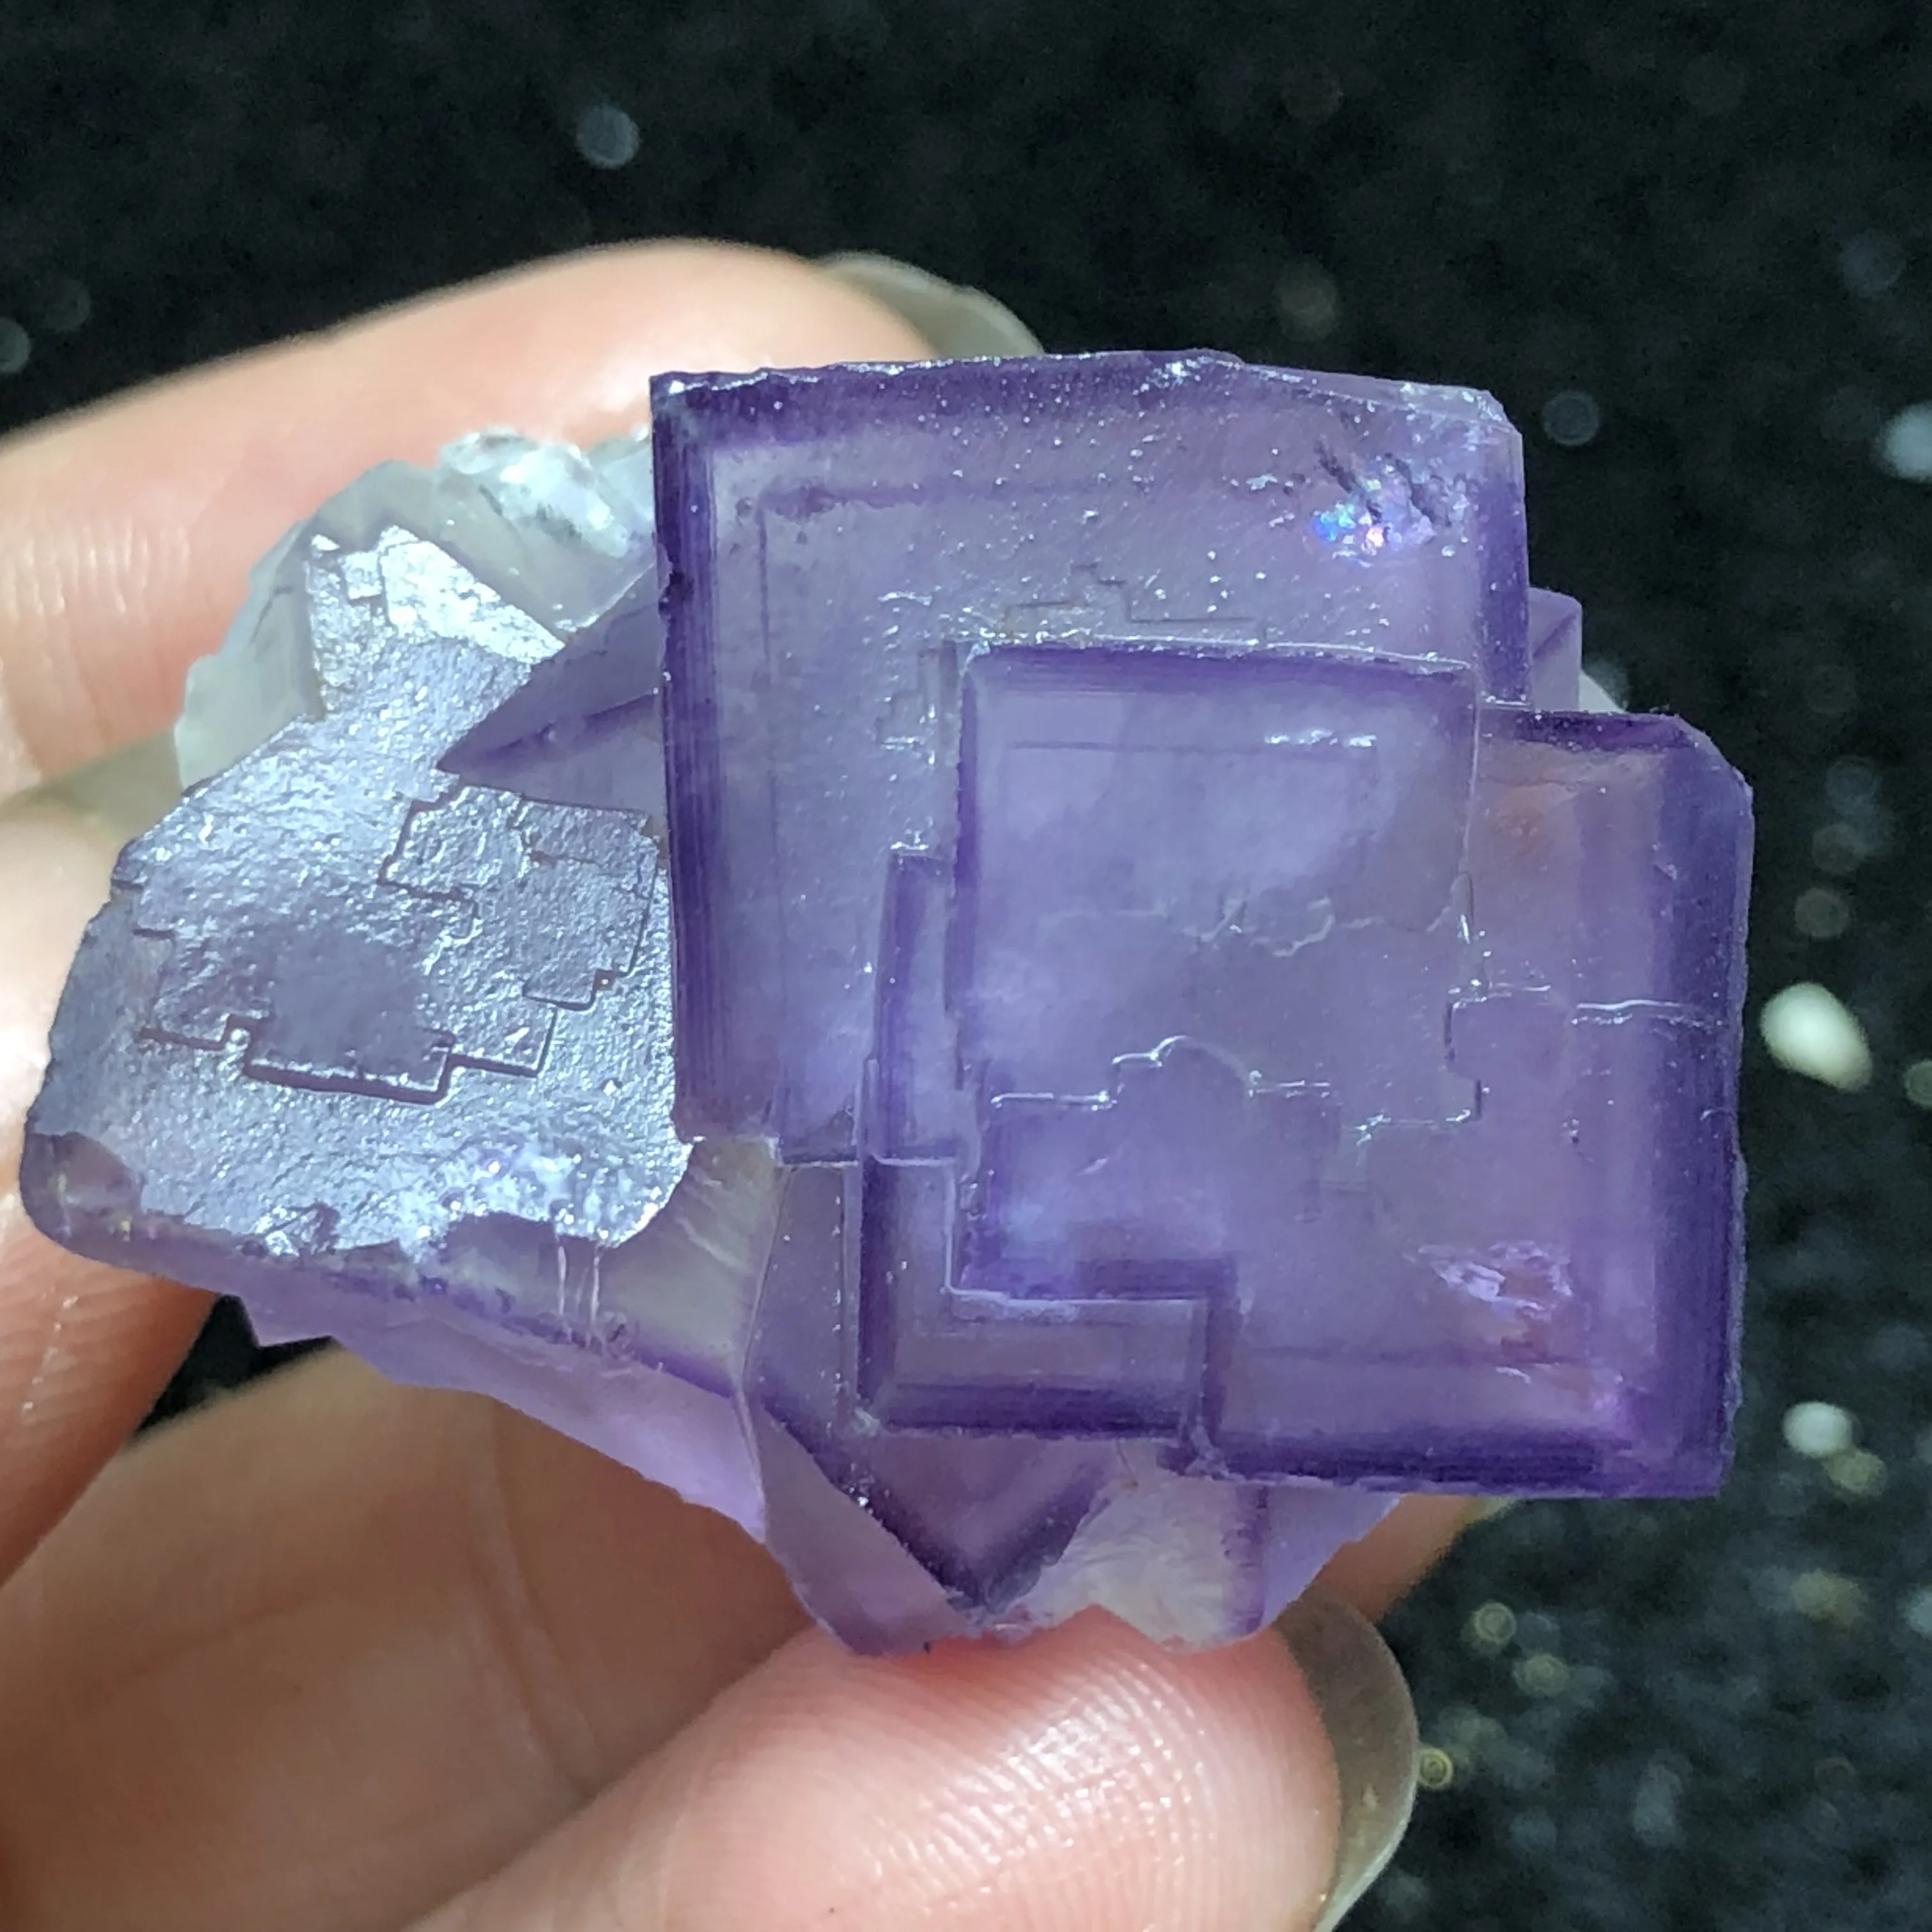 

27,4 gNatural редкий фиолетовый флюорит кластер минеральных учебный образец с украшением в виде кристаллов лечебный Кристал, кварц камень украше...